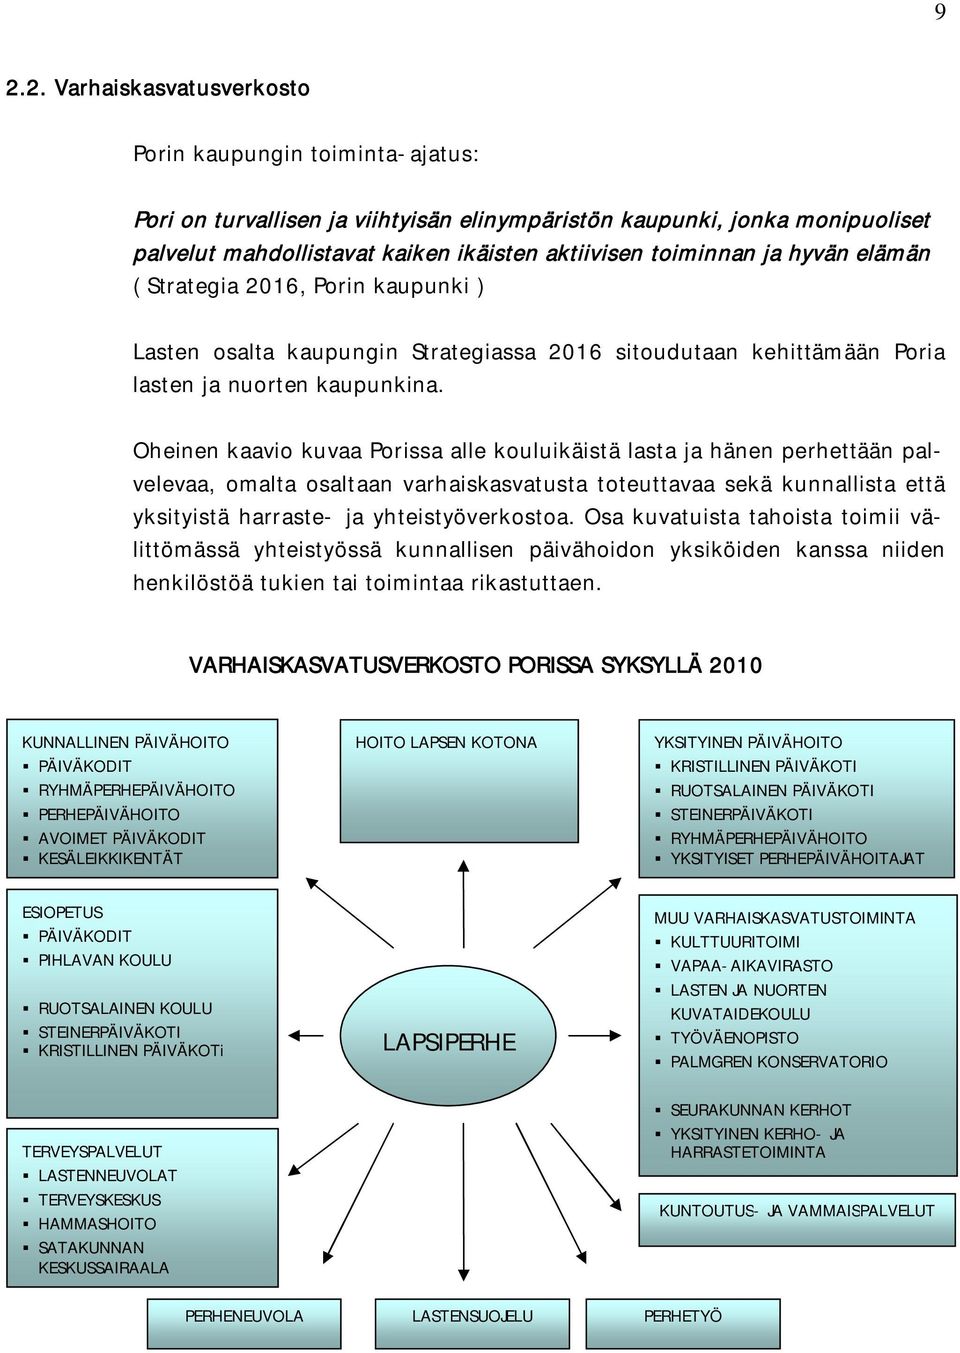 Oheinen kaavio kuvaa Porissa alle kouluikäistä lasta ja hänen perhettään palvelevaa, omalta osaltaan varhaiskasvatusta toteuttavaa sekä kunnallista että yksityistä harraste- ja yhteistyöverkostoa.